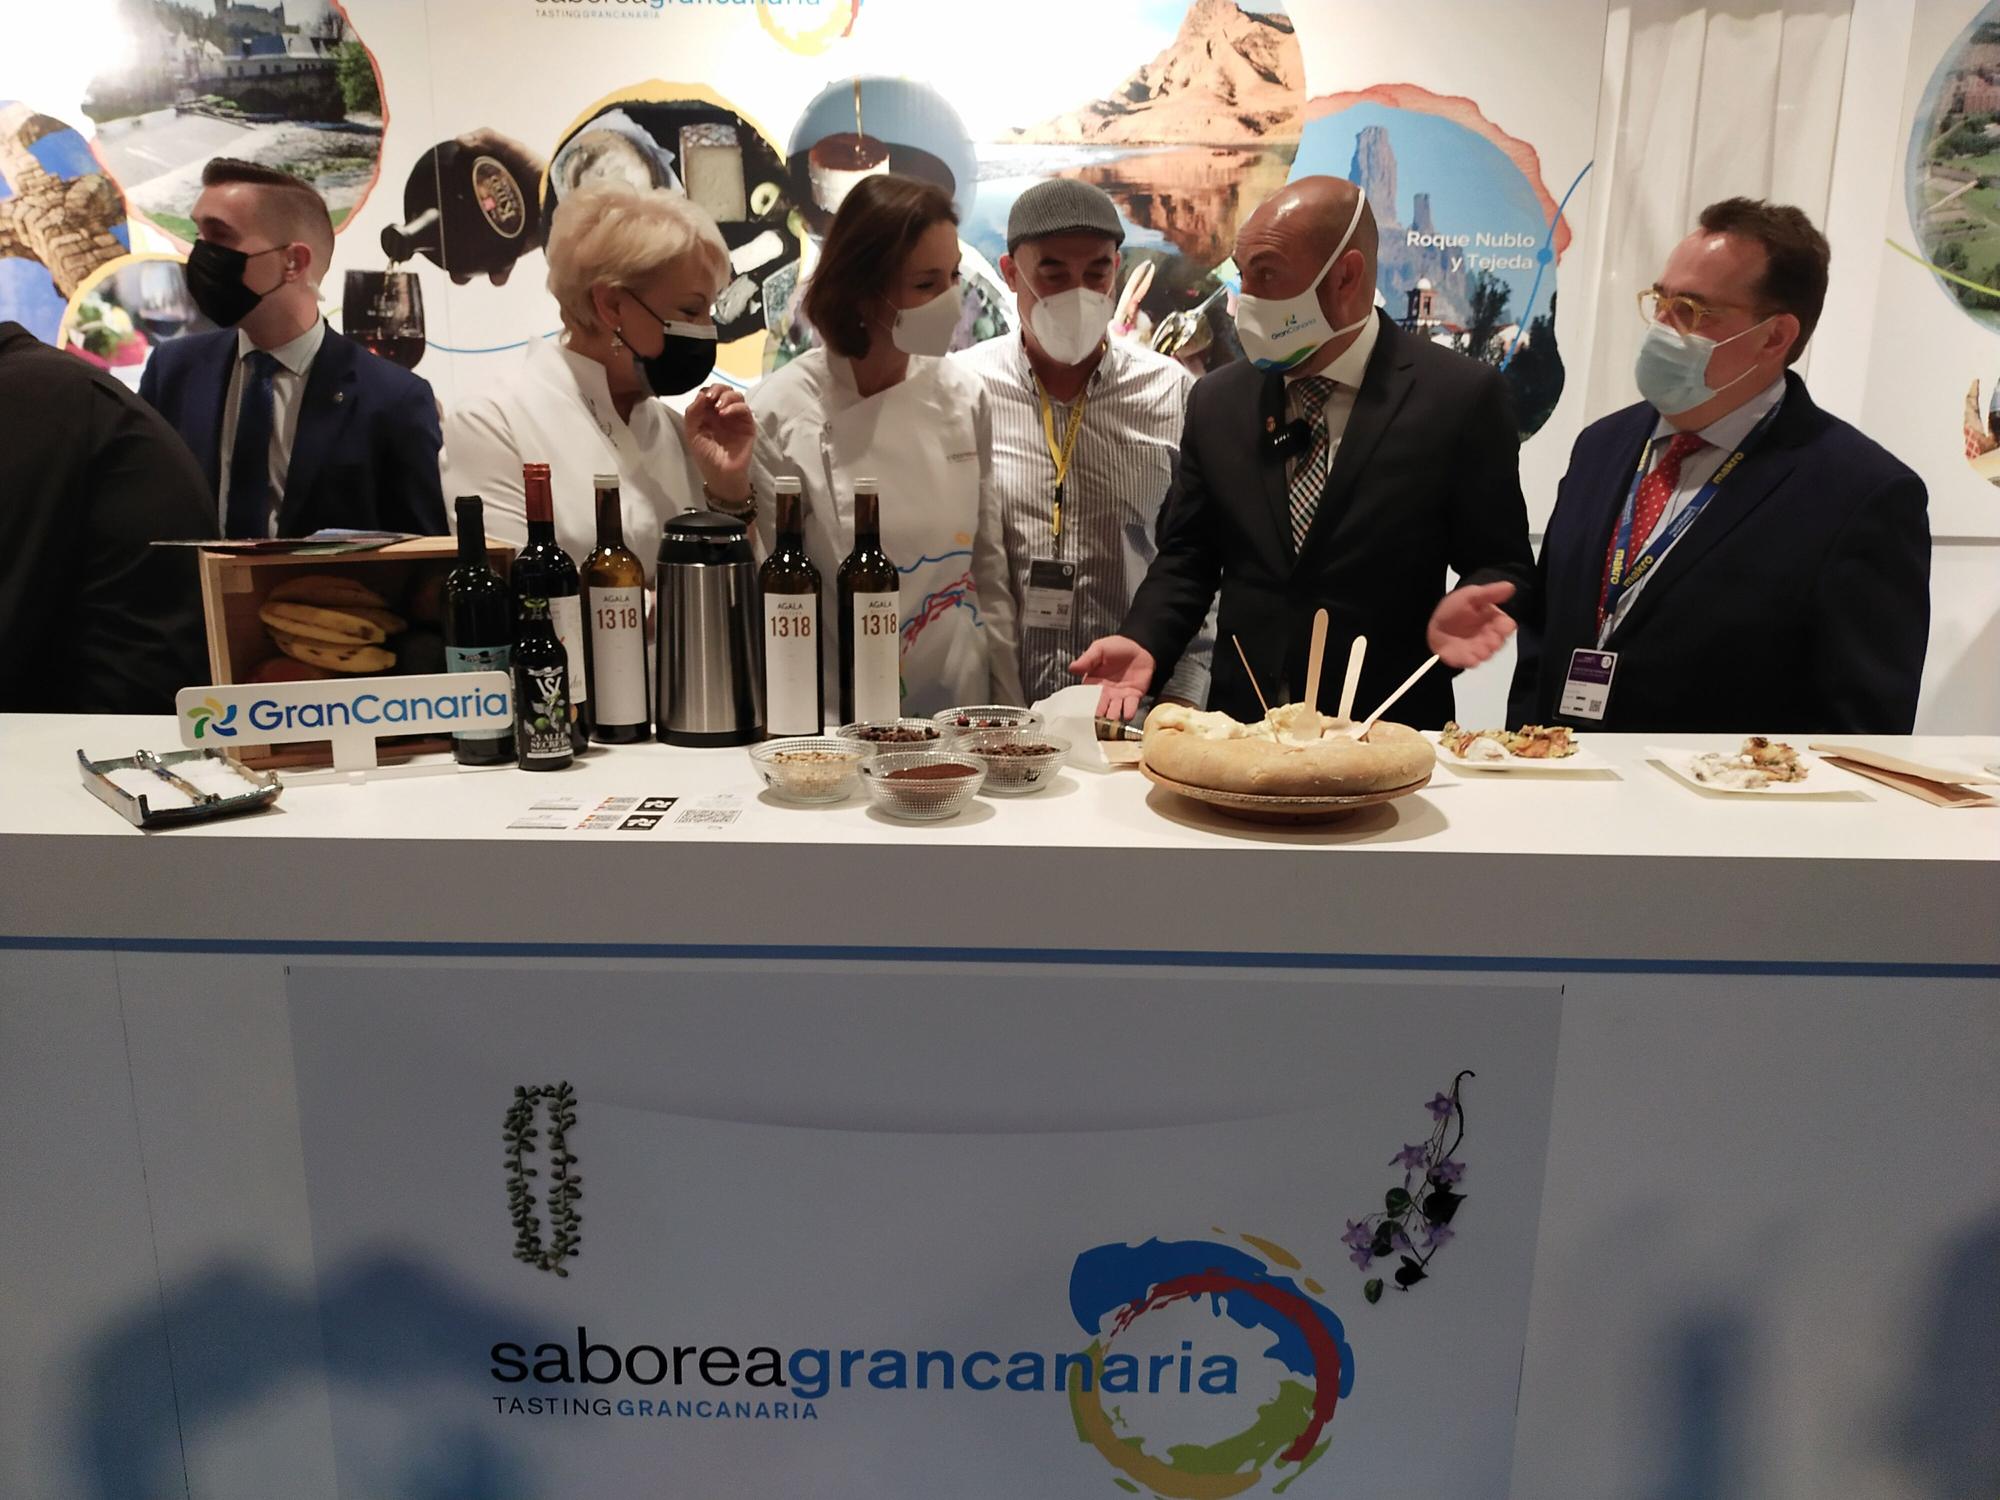 La ministra de Turismo Reyes Maroto visita el stand de Gran Canaria junto al consejero insular Carlos Álamo.